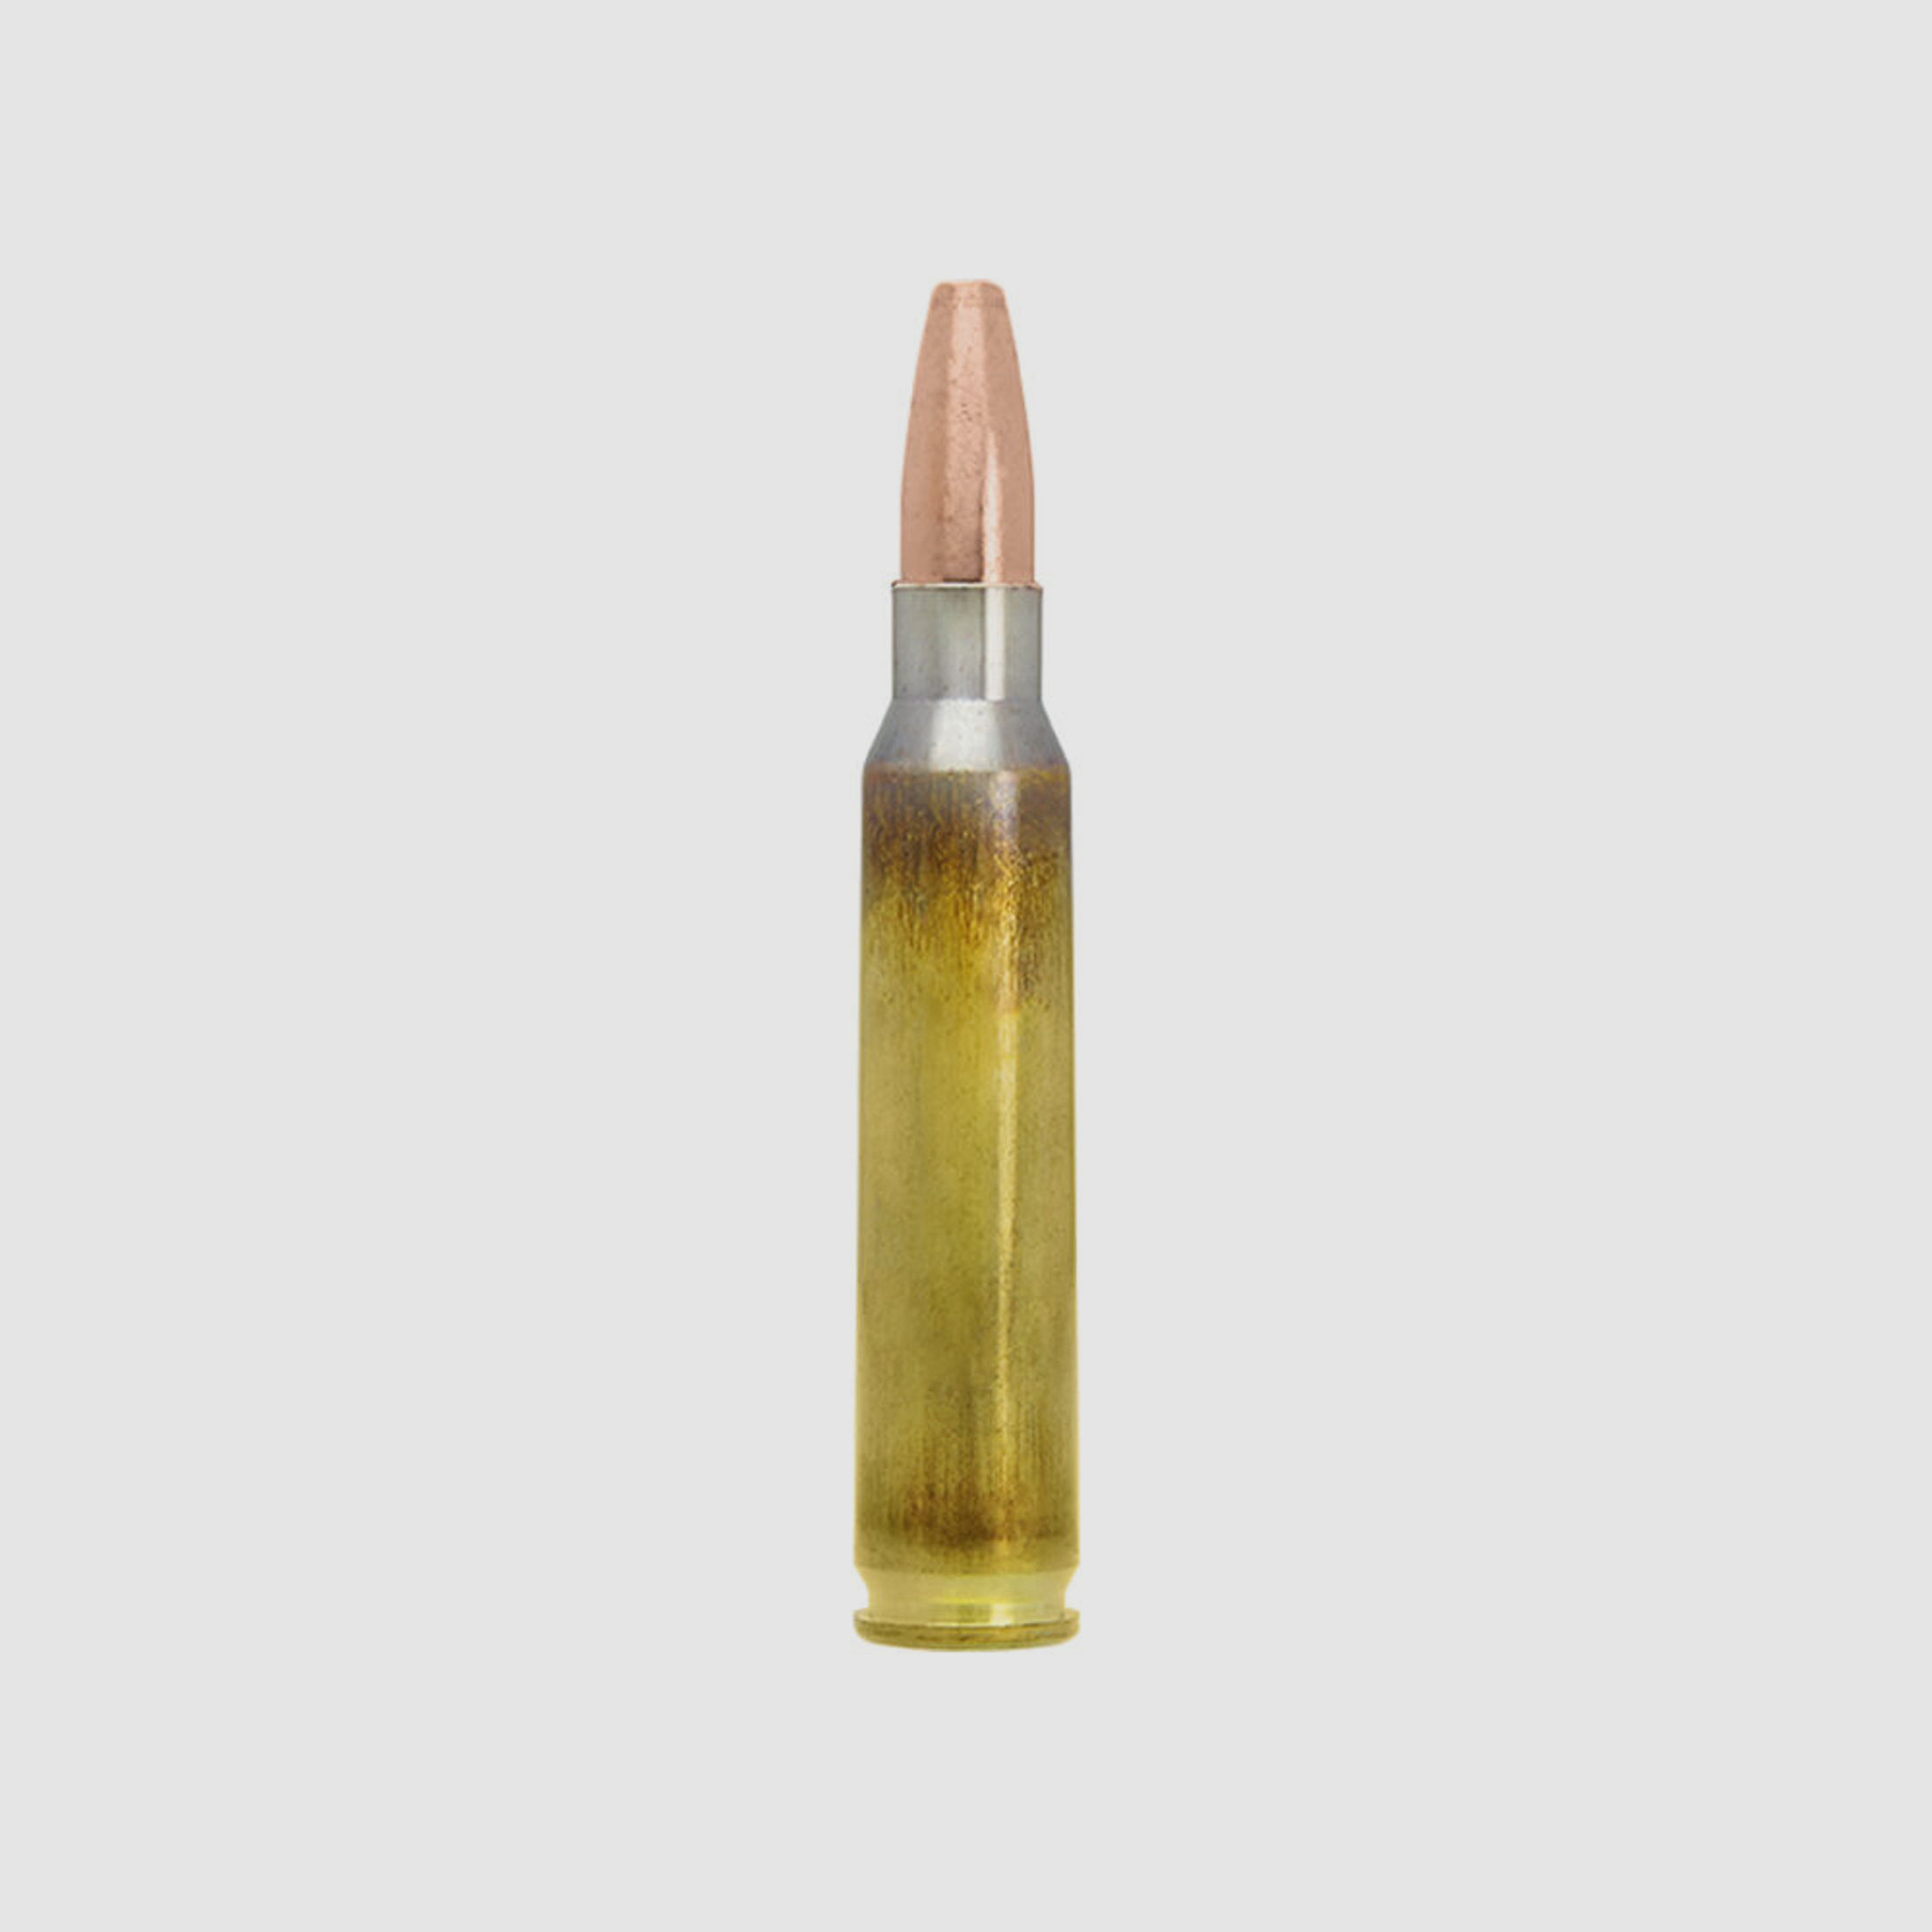 Lapua Naturalis Büchsenmunition 50grs .223Rem bleifrei